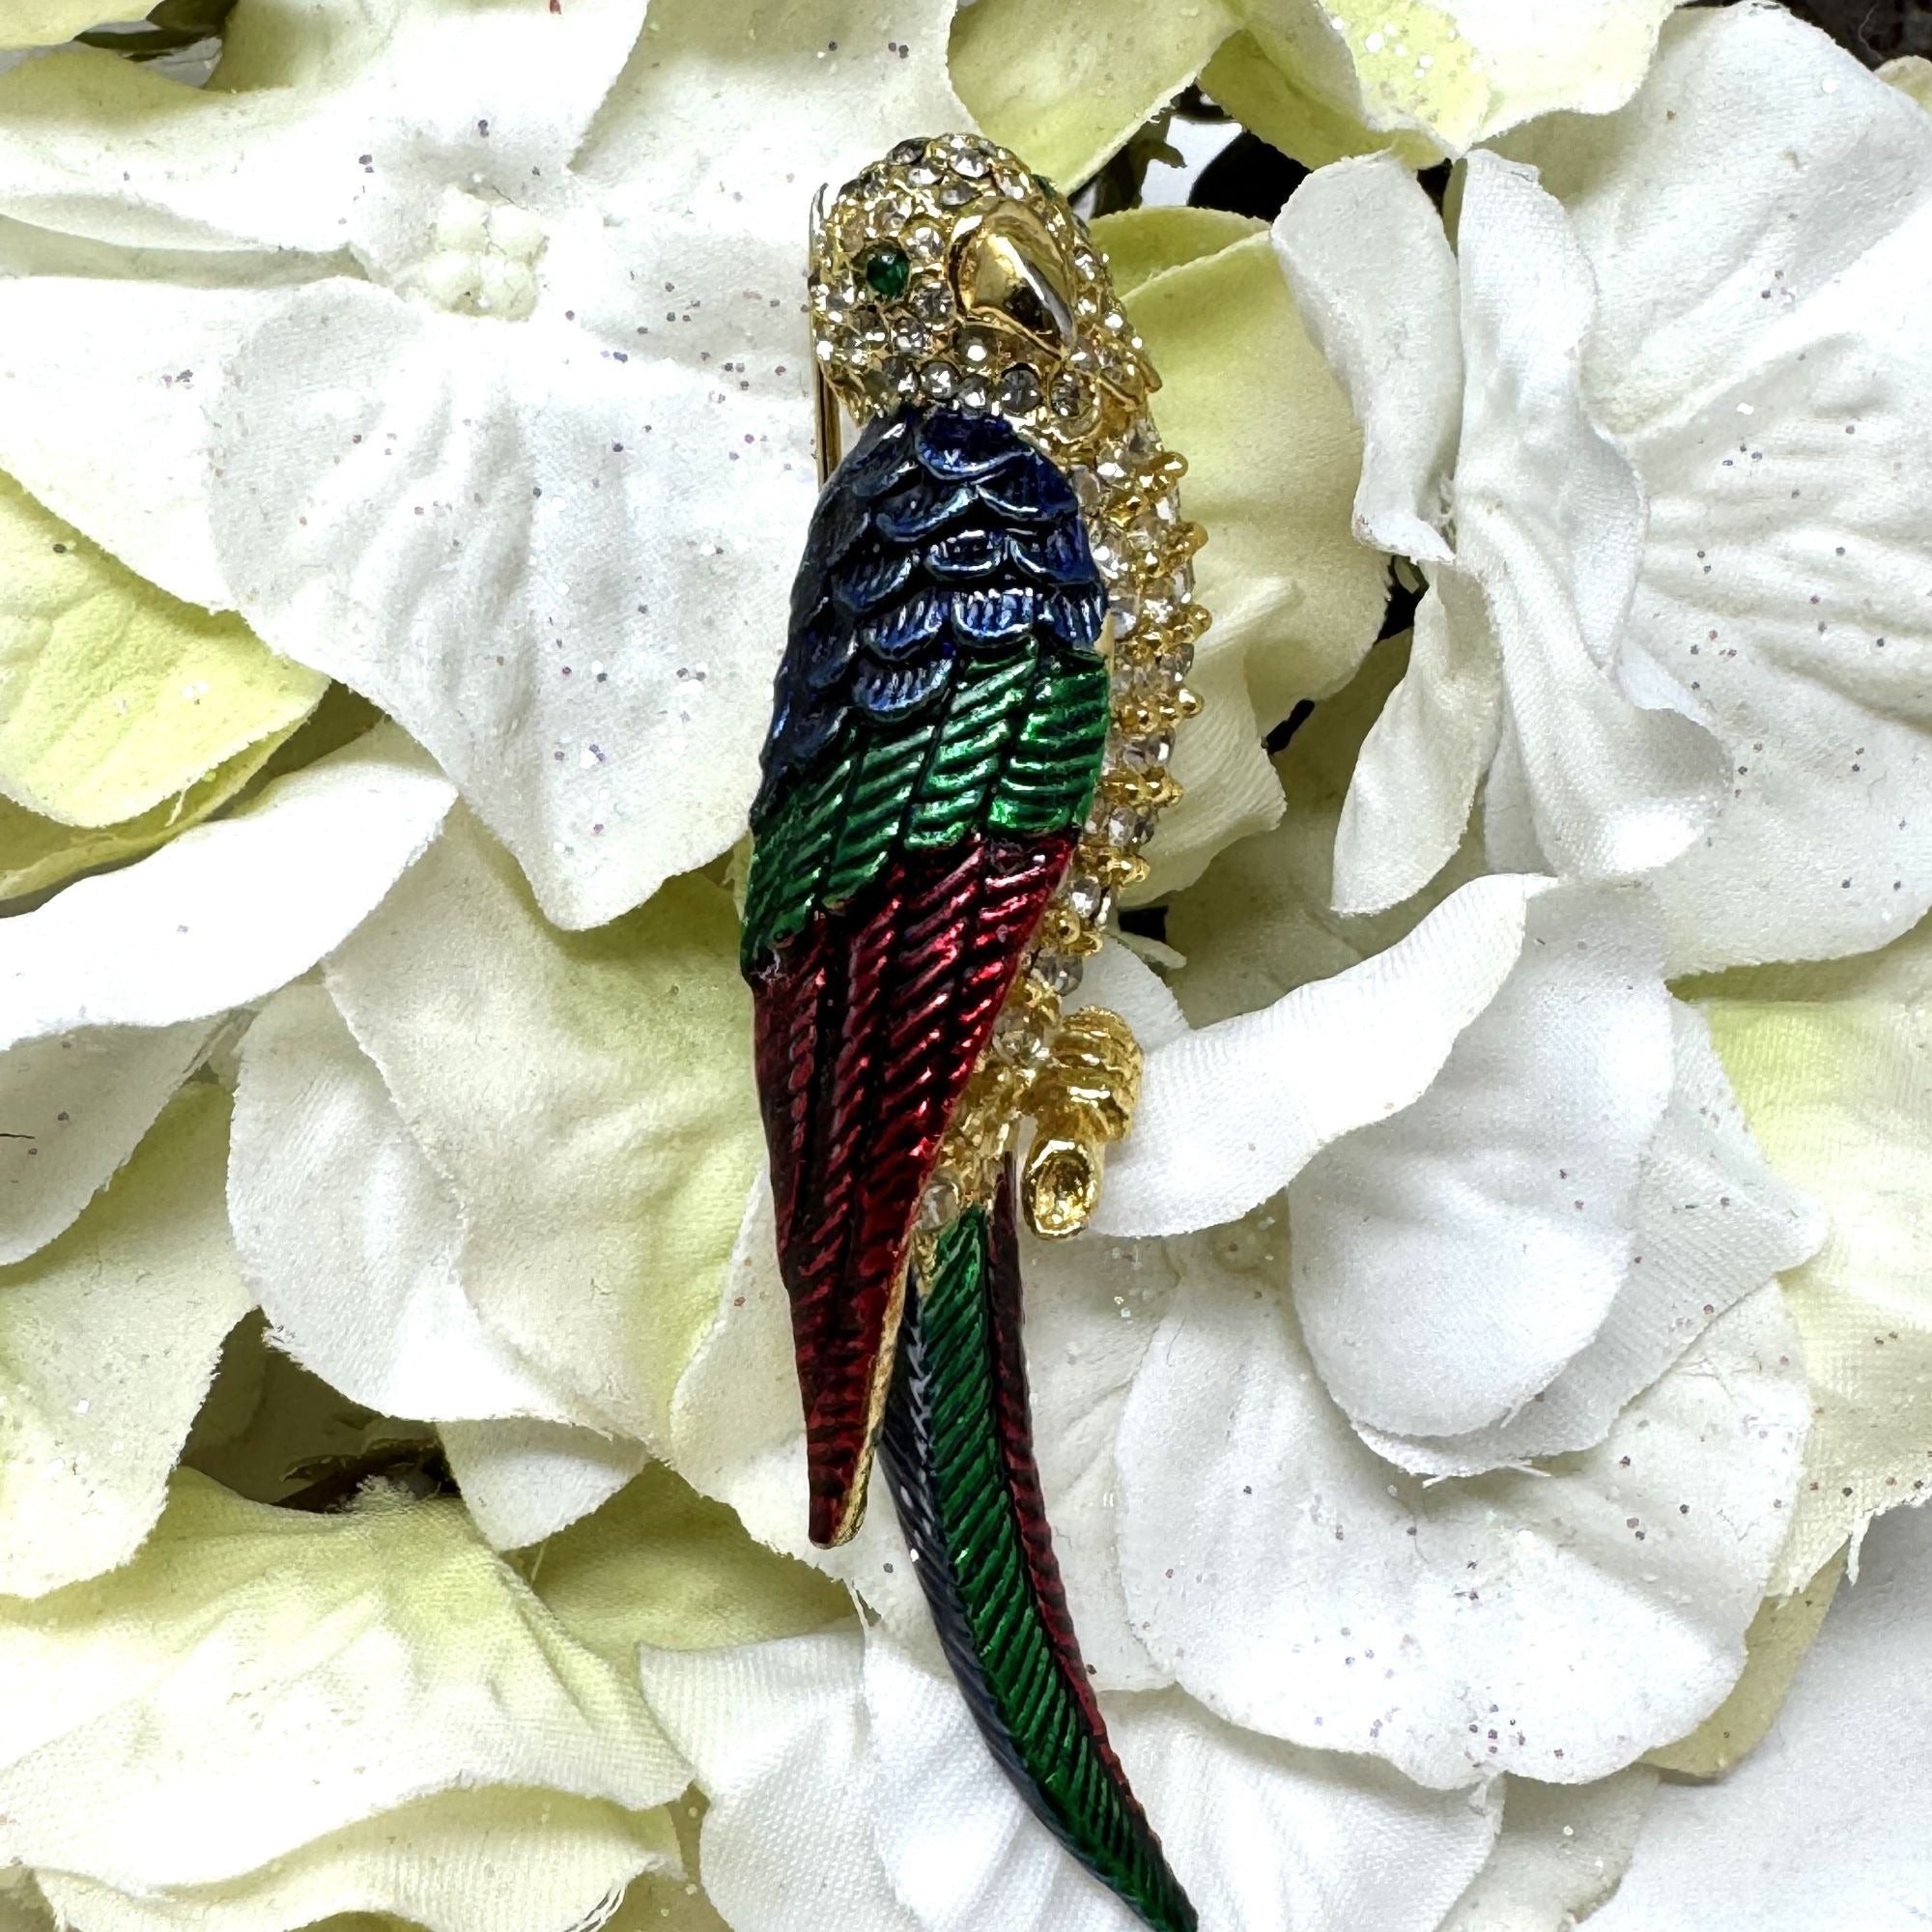 Vintage Parrot Brooch Pin Enamel N Rhinestone Goldtone